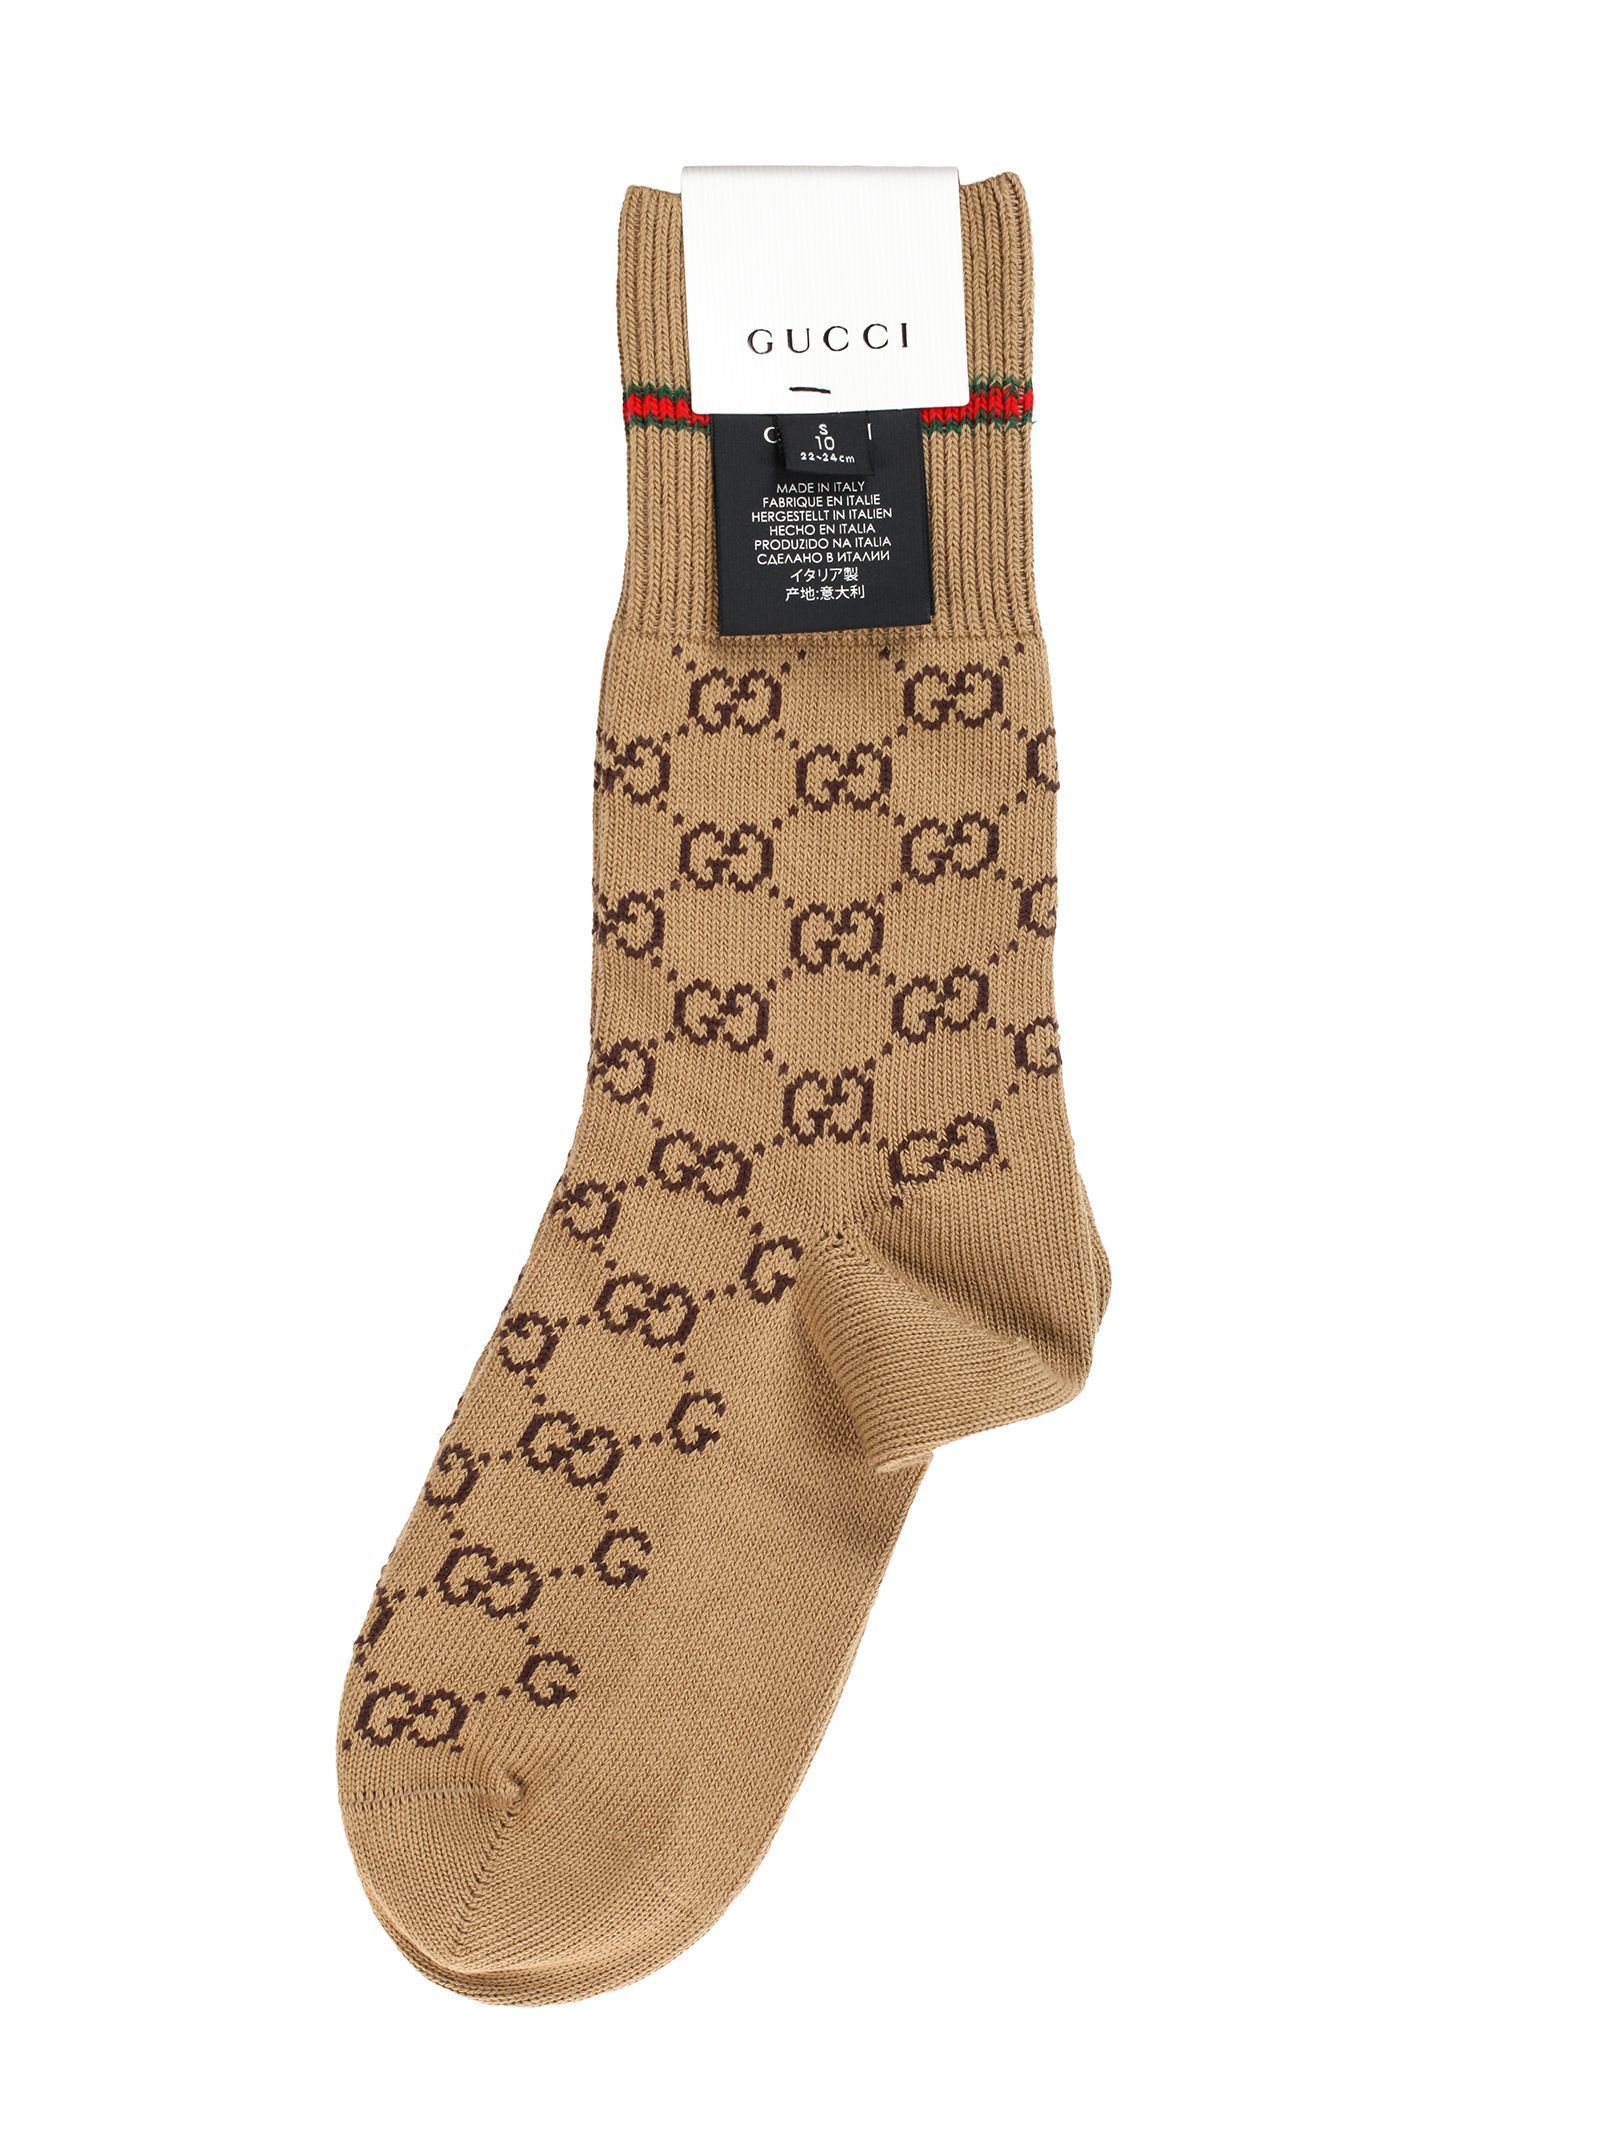 Gucci-Socks Brand For Men